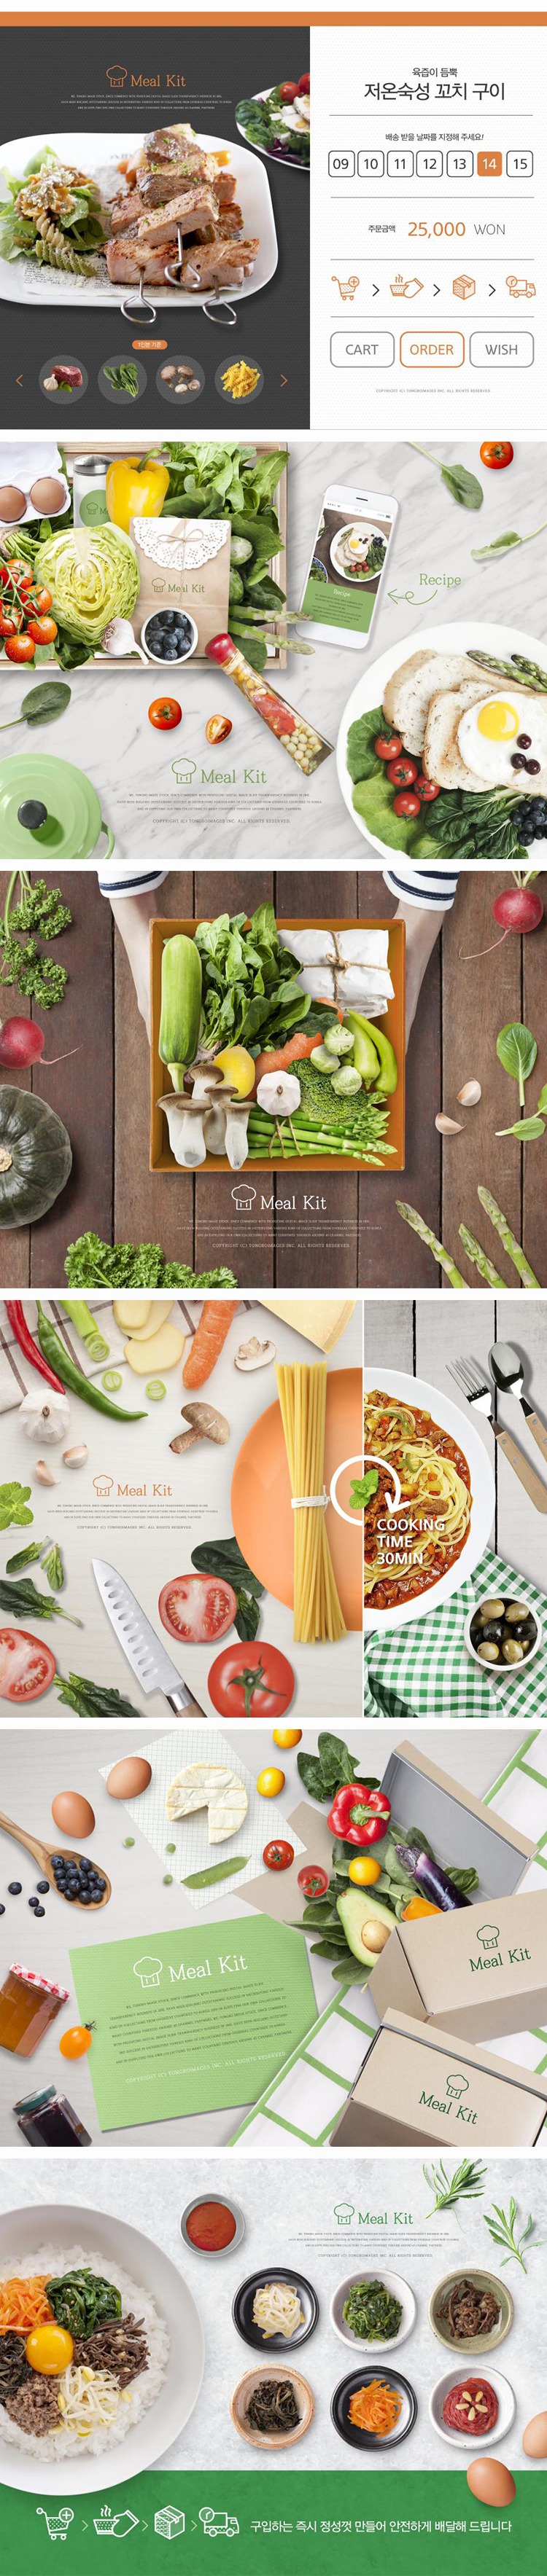 餐饮美食健康饮食蔬果营养搭配海报模板PSD分层源文件素材 图片素材 第3张